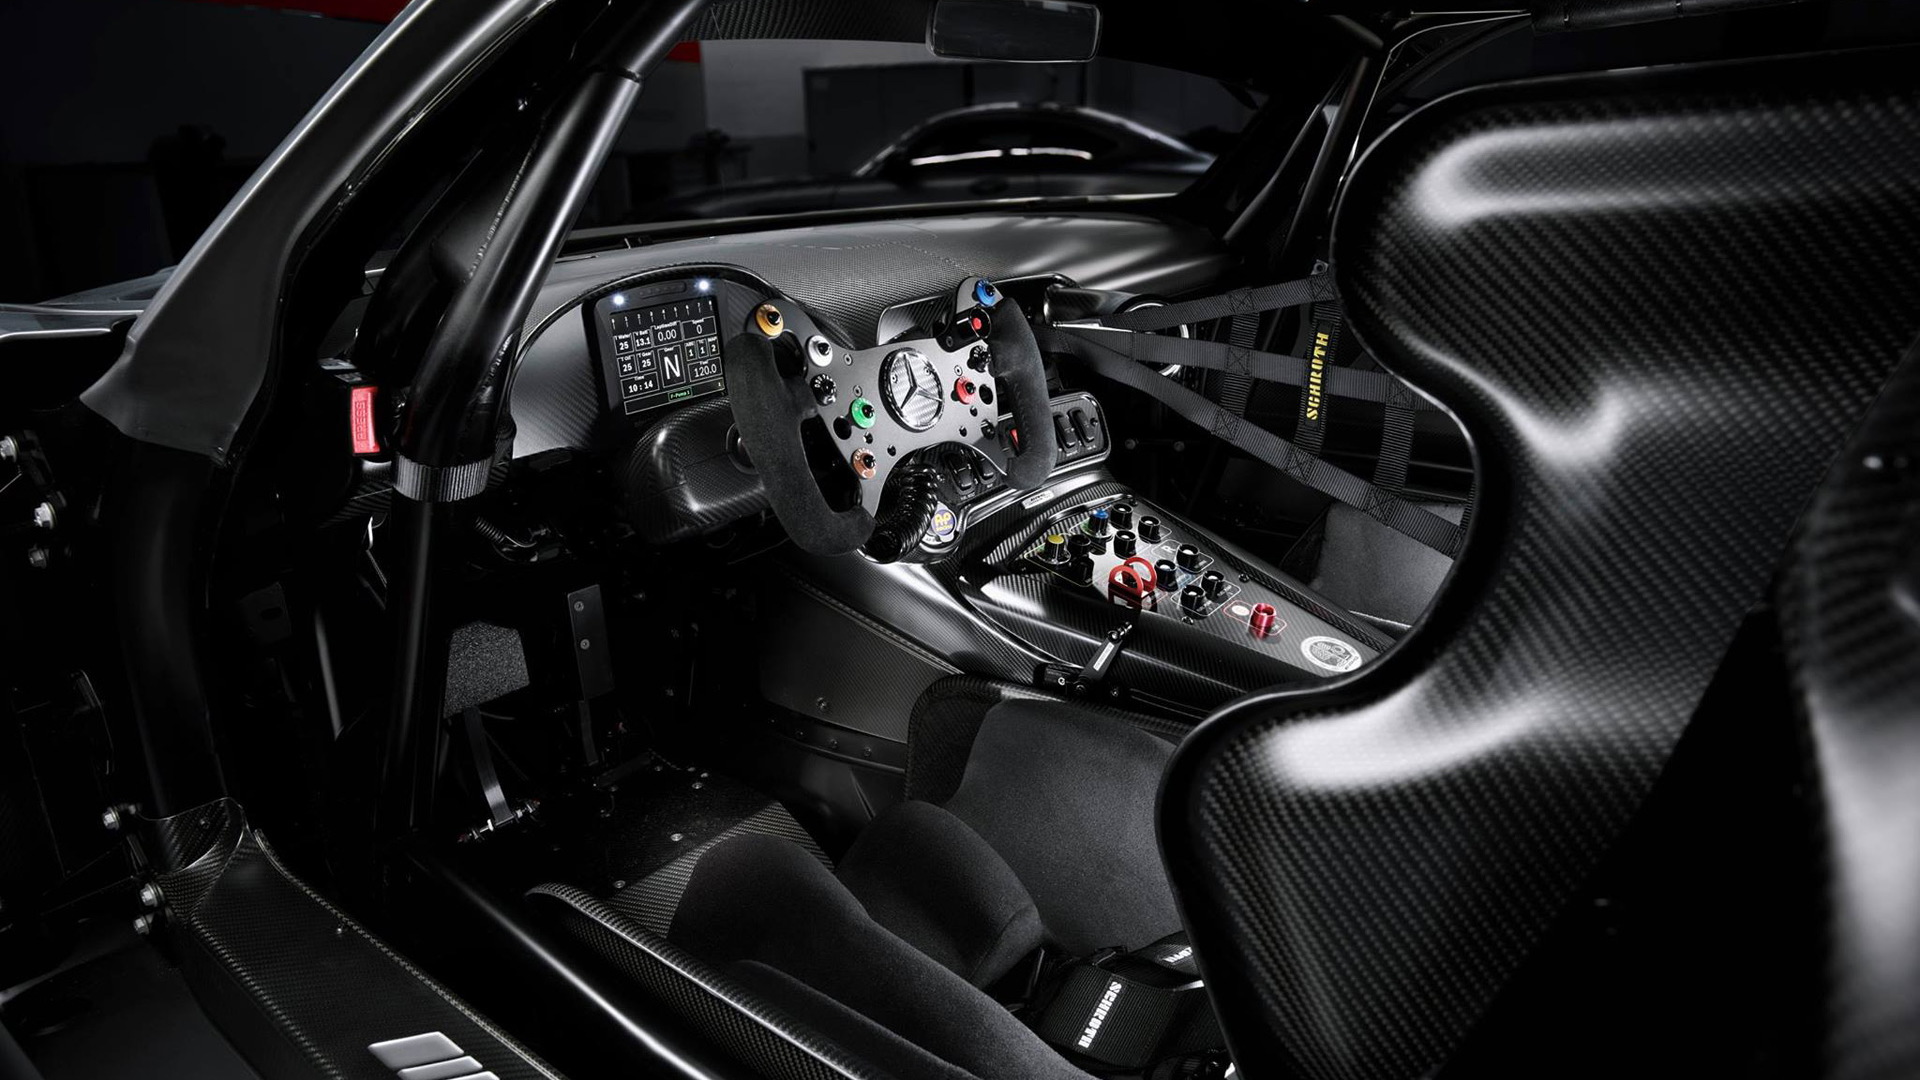 2017 Mercedes-AMG GT3 Edition 50